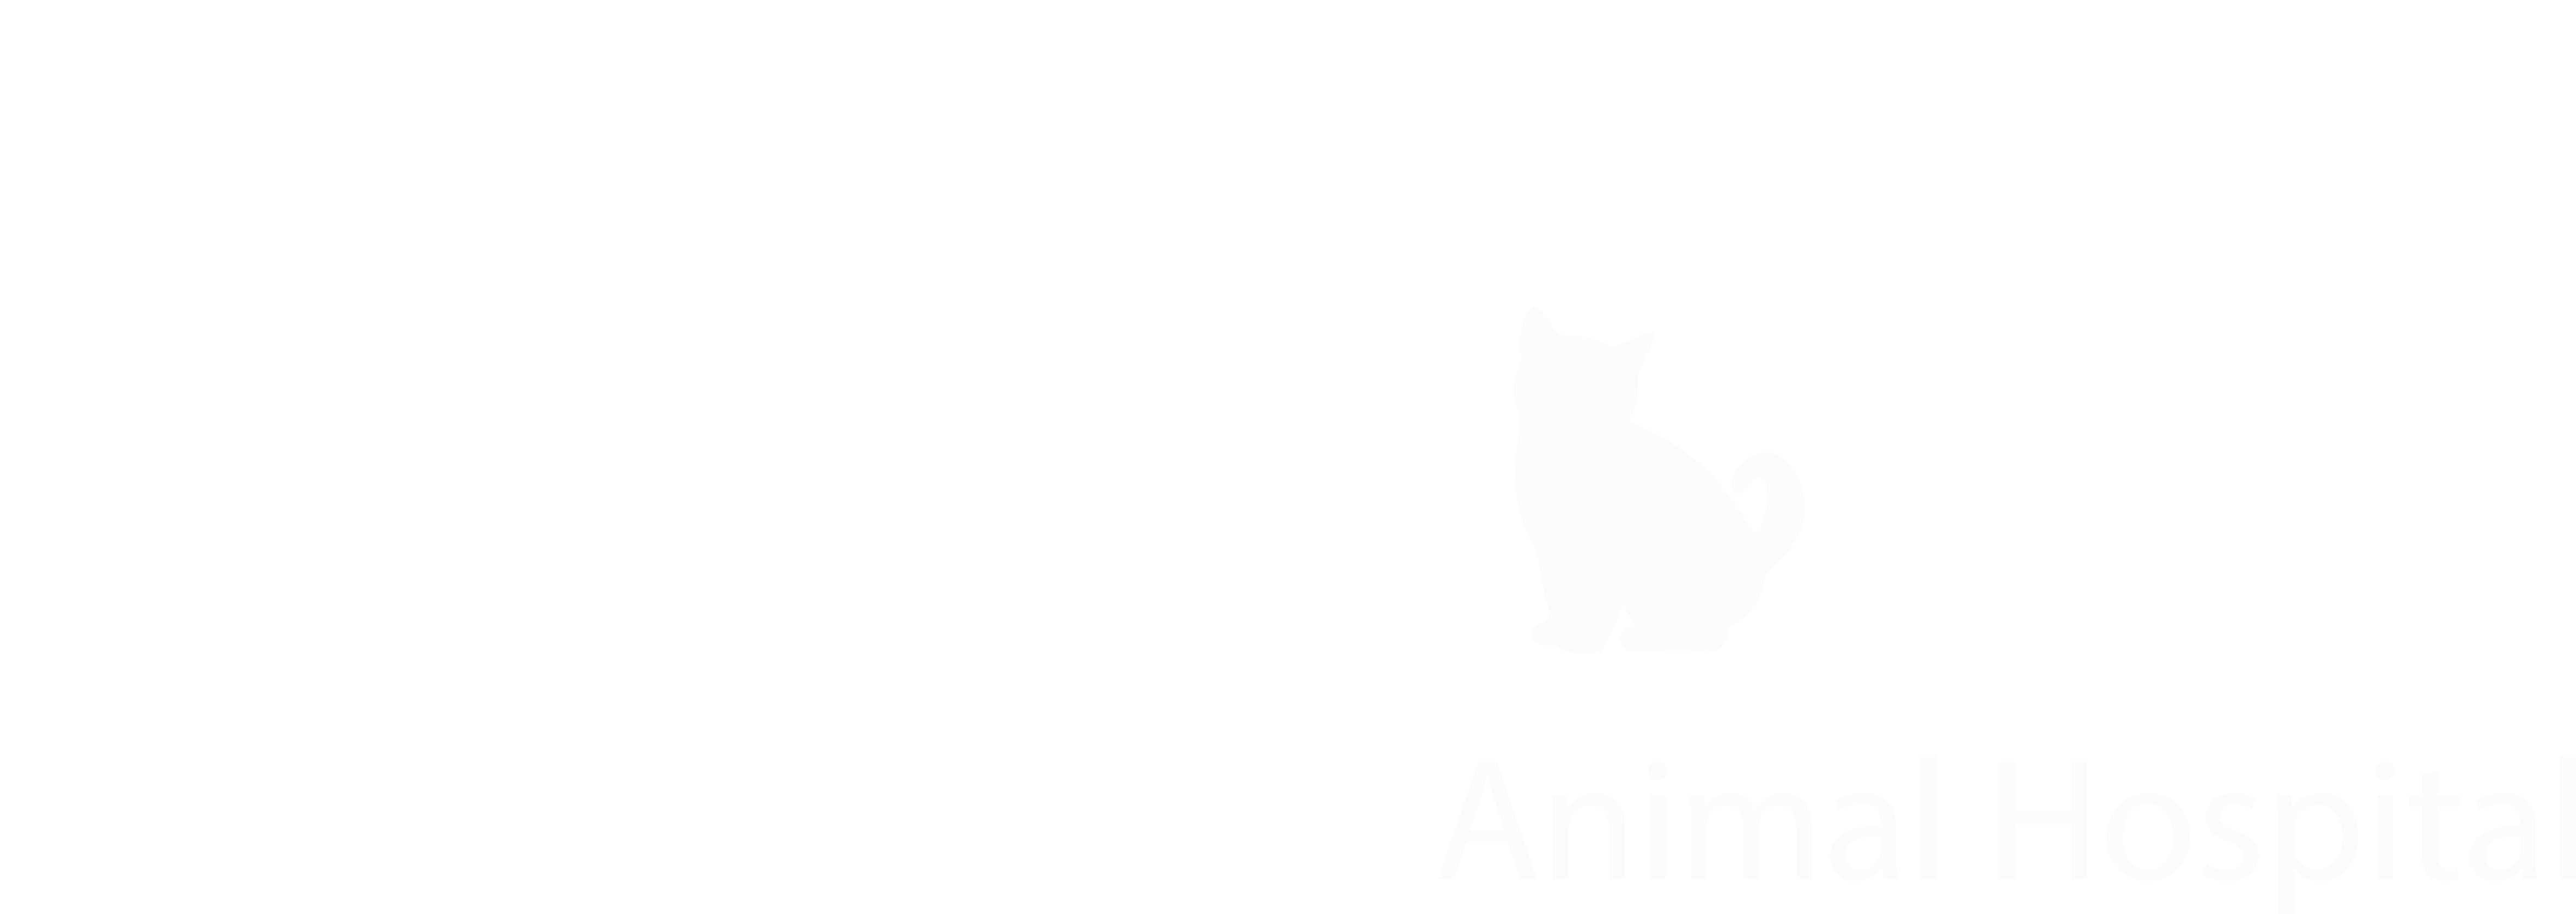 Southern California Animal Hospital - La Puente, Ca